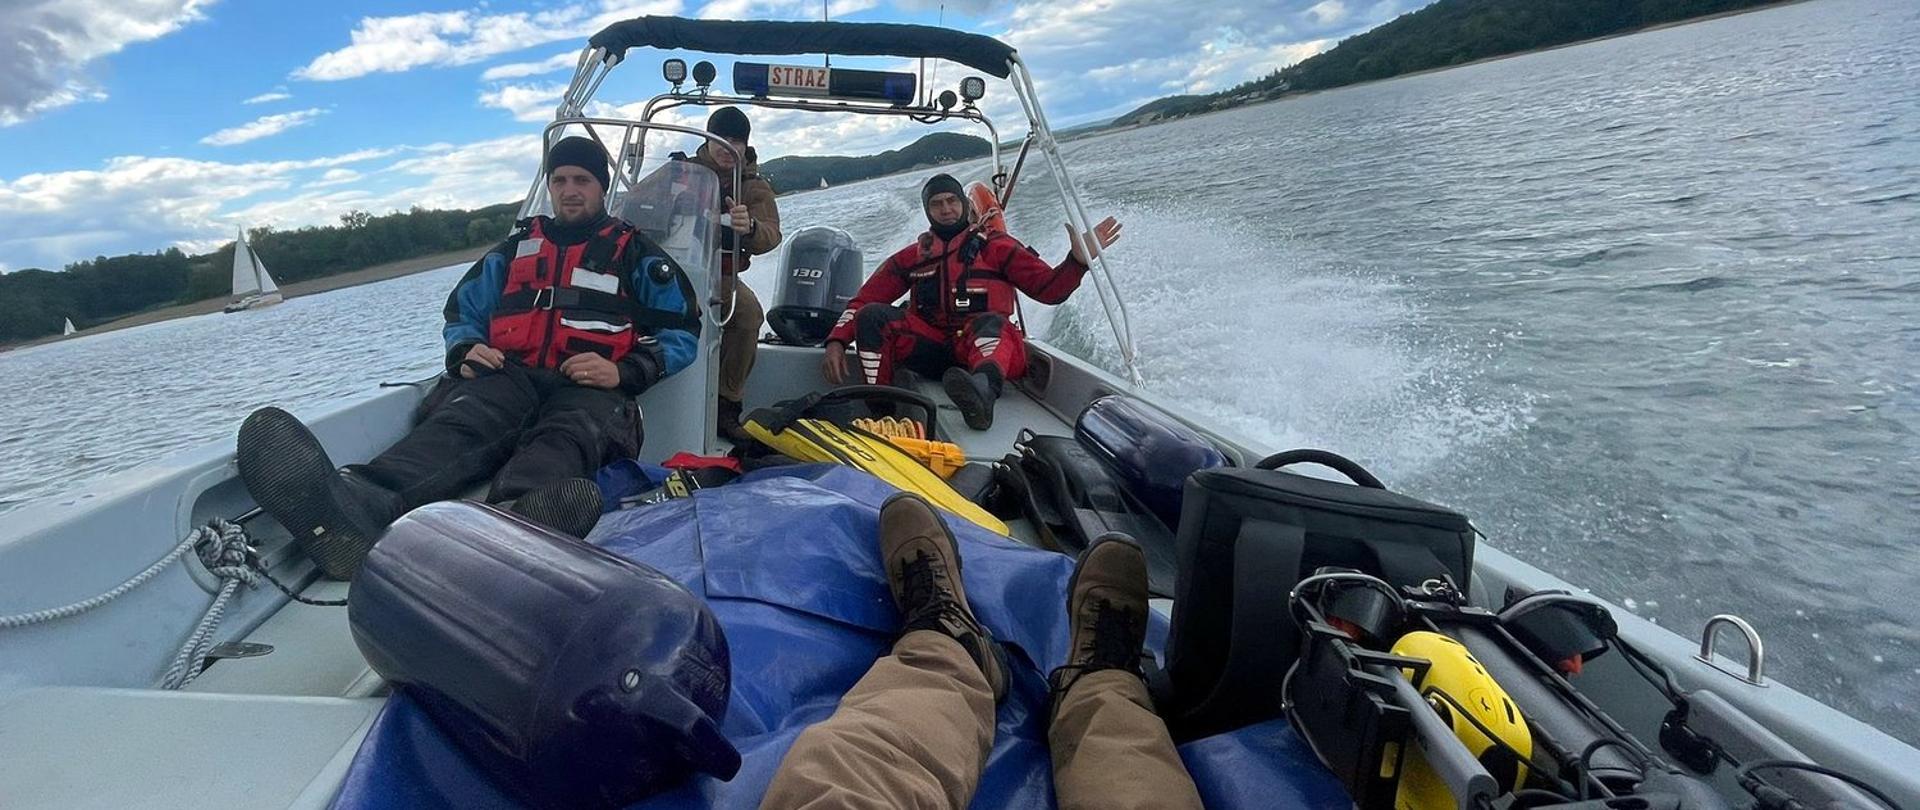 Zdjęcie wykonane na zewnątrz, na jeziorze. Wnętrze łodzi motorowej, na pokładzie której jest trzech strażaków oraz właśnie sprzęt do ratownictwa wodnego. 